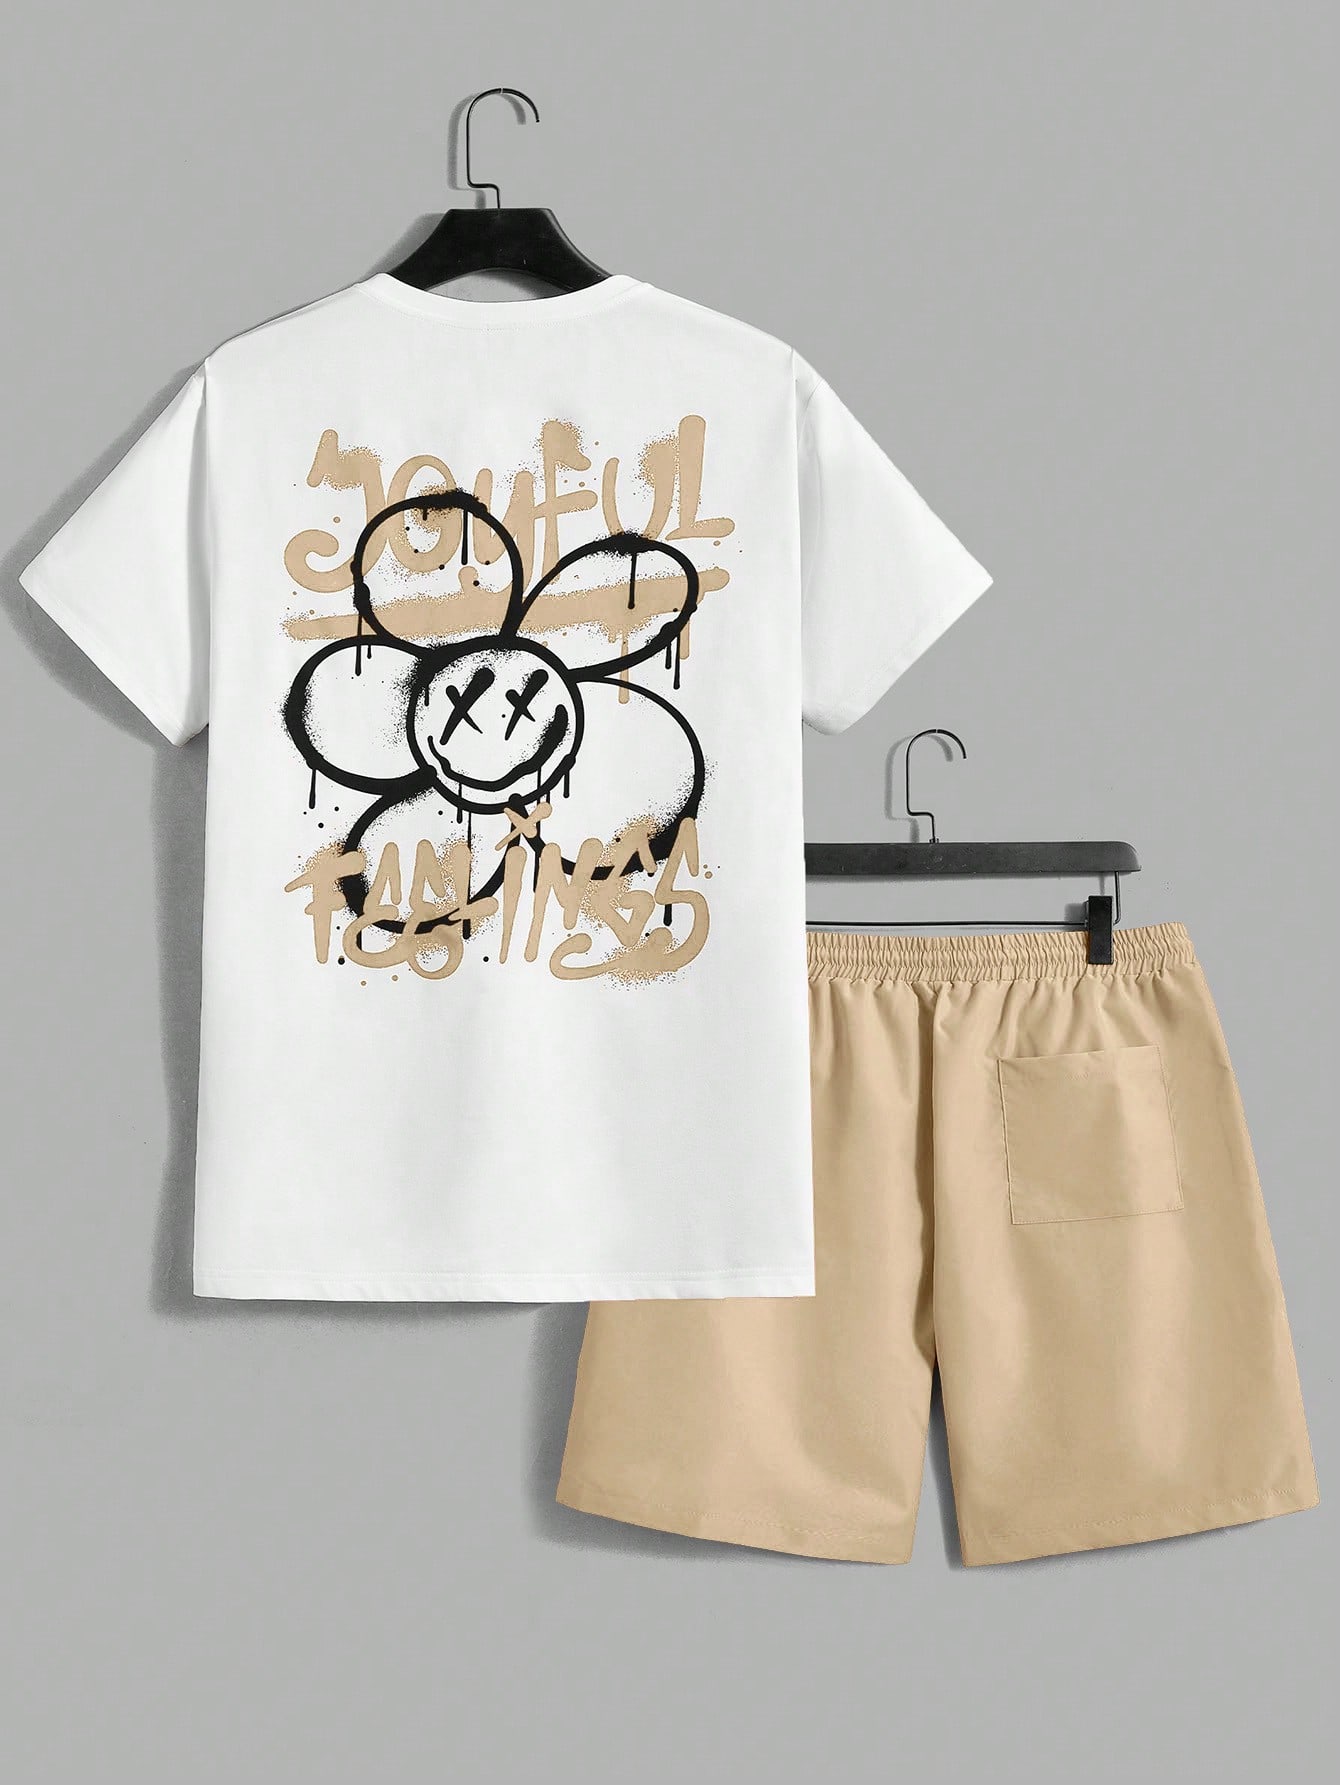 Мужской комплект из футболки и шорт с короткими рукавами Manfinity EMRG с цветочным принтом и буквенным принтом, хаки